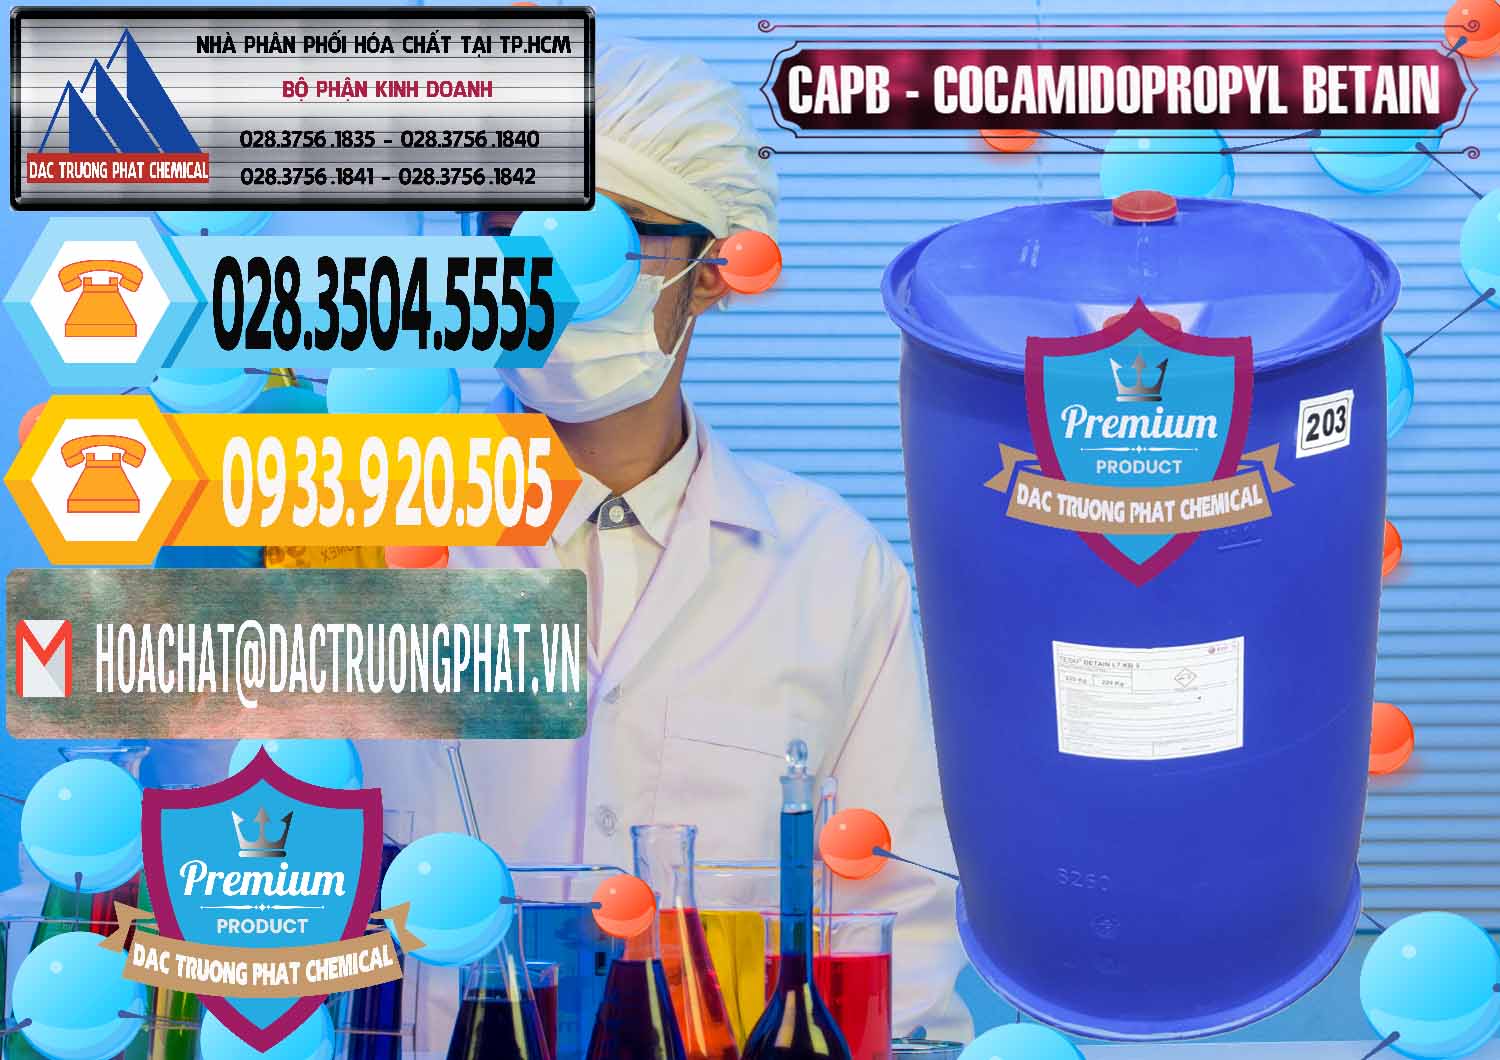 Đơn vị phân phối và bán Cocamidopropyl Betaine - CAPB Tego Indonesia - 0327 - Cung cấp & bán hóa chất tại TP.HCM - hoachattayrua.net